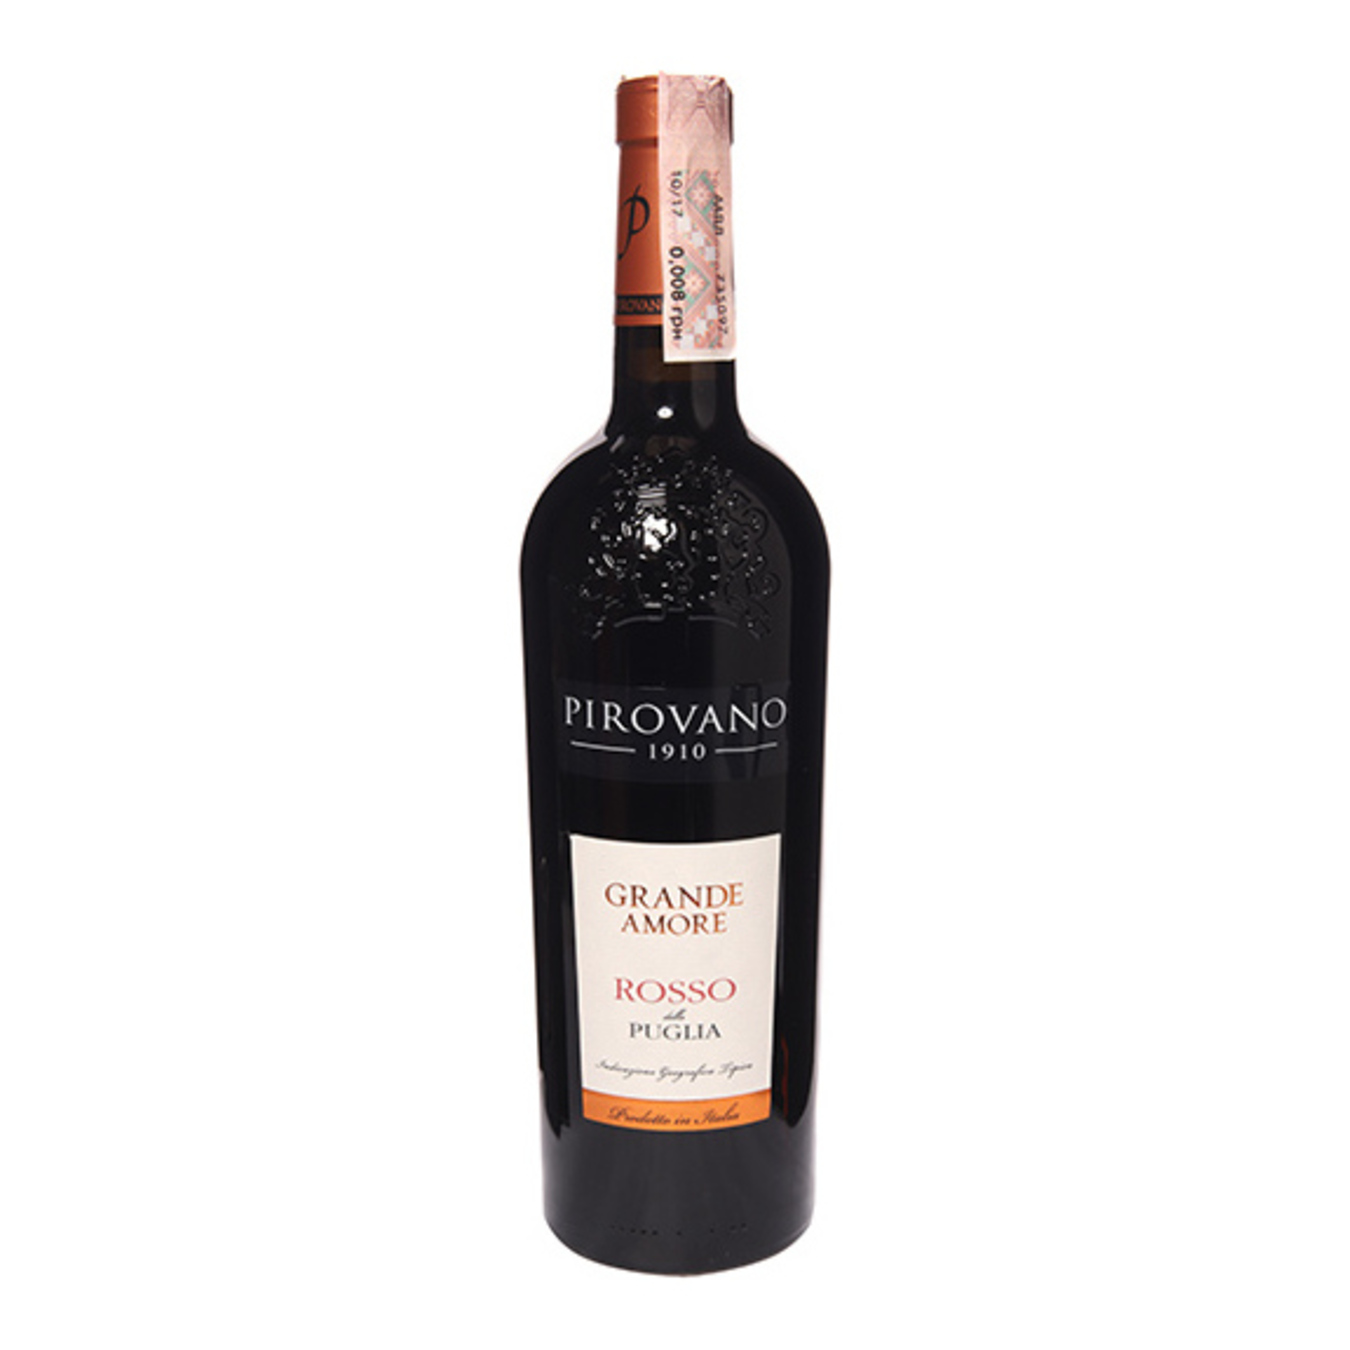 Pirovano Grande Amore Rosso Puglia IGT red semi-dry wine 14% 0,75l